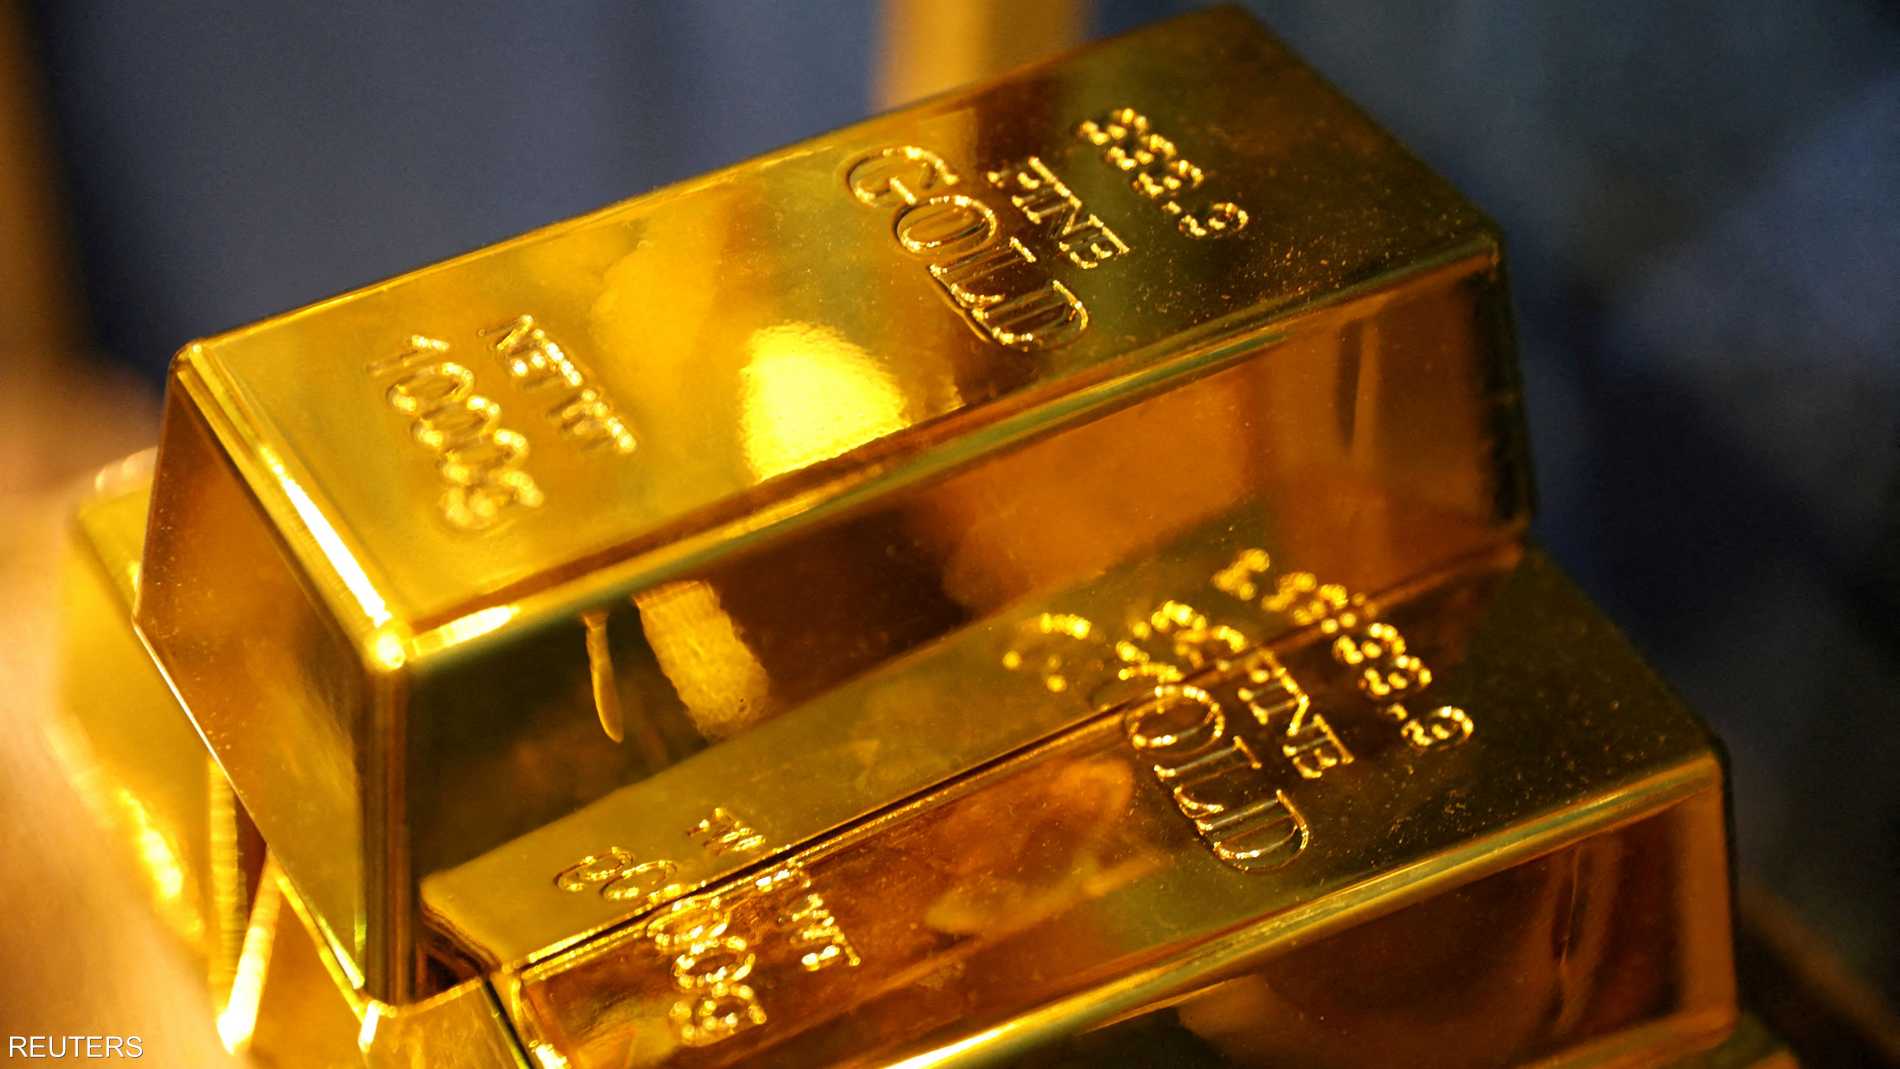 الذهب يرتفع من أدنى مستوى في أسبوعين مع ترقب بيانات أميركية